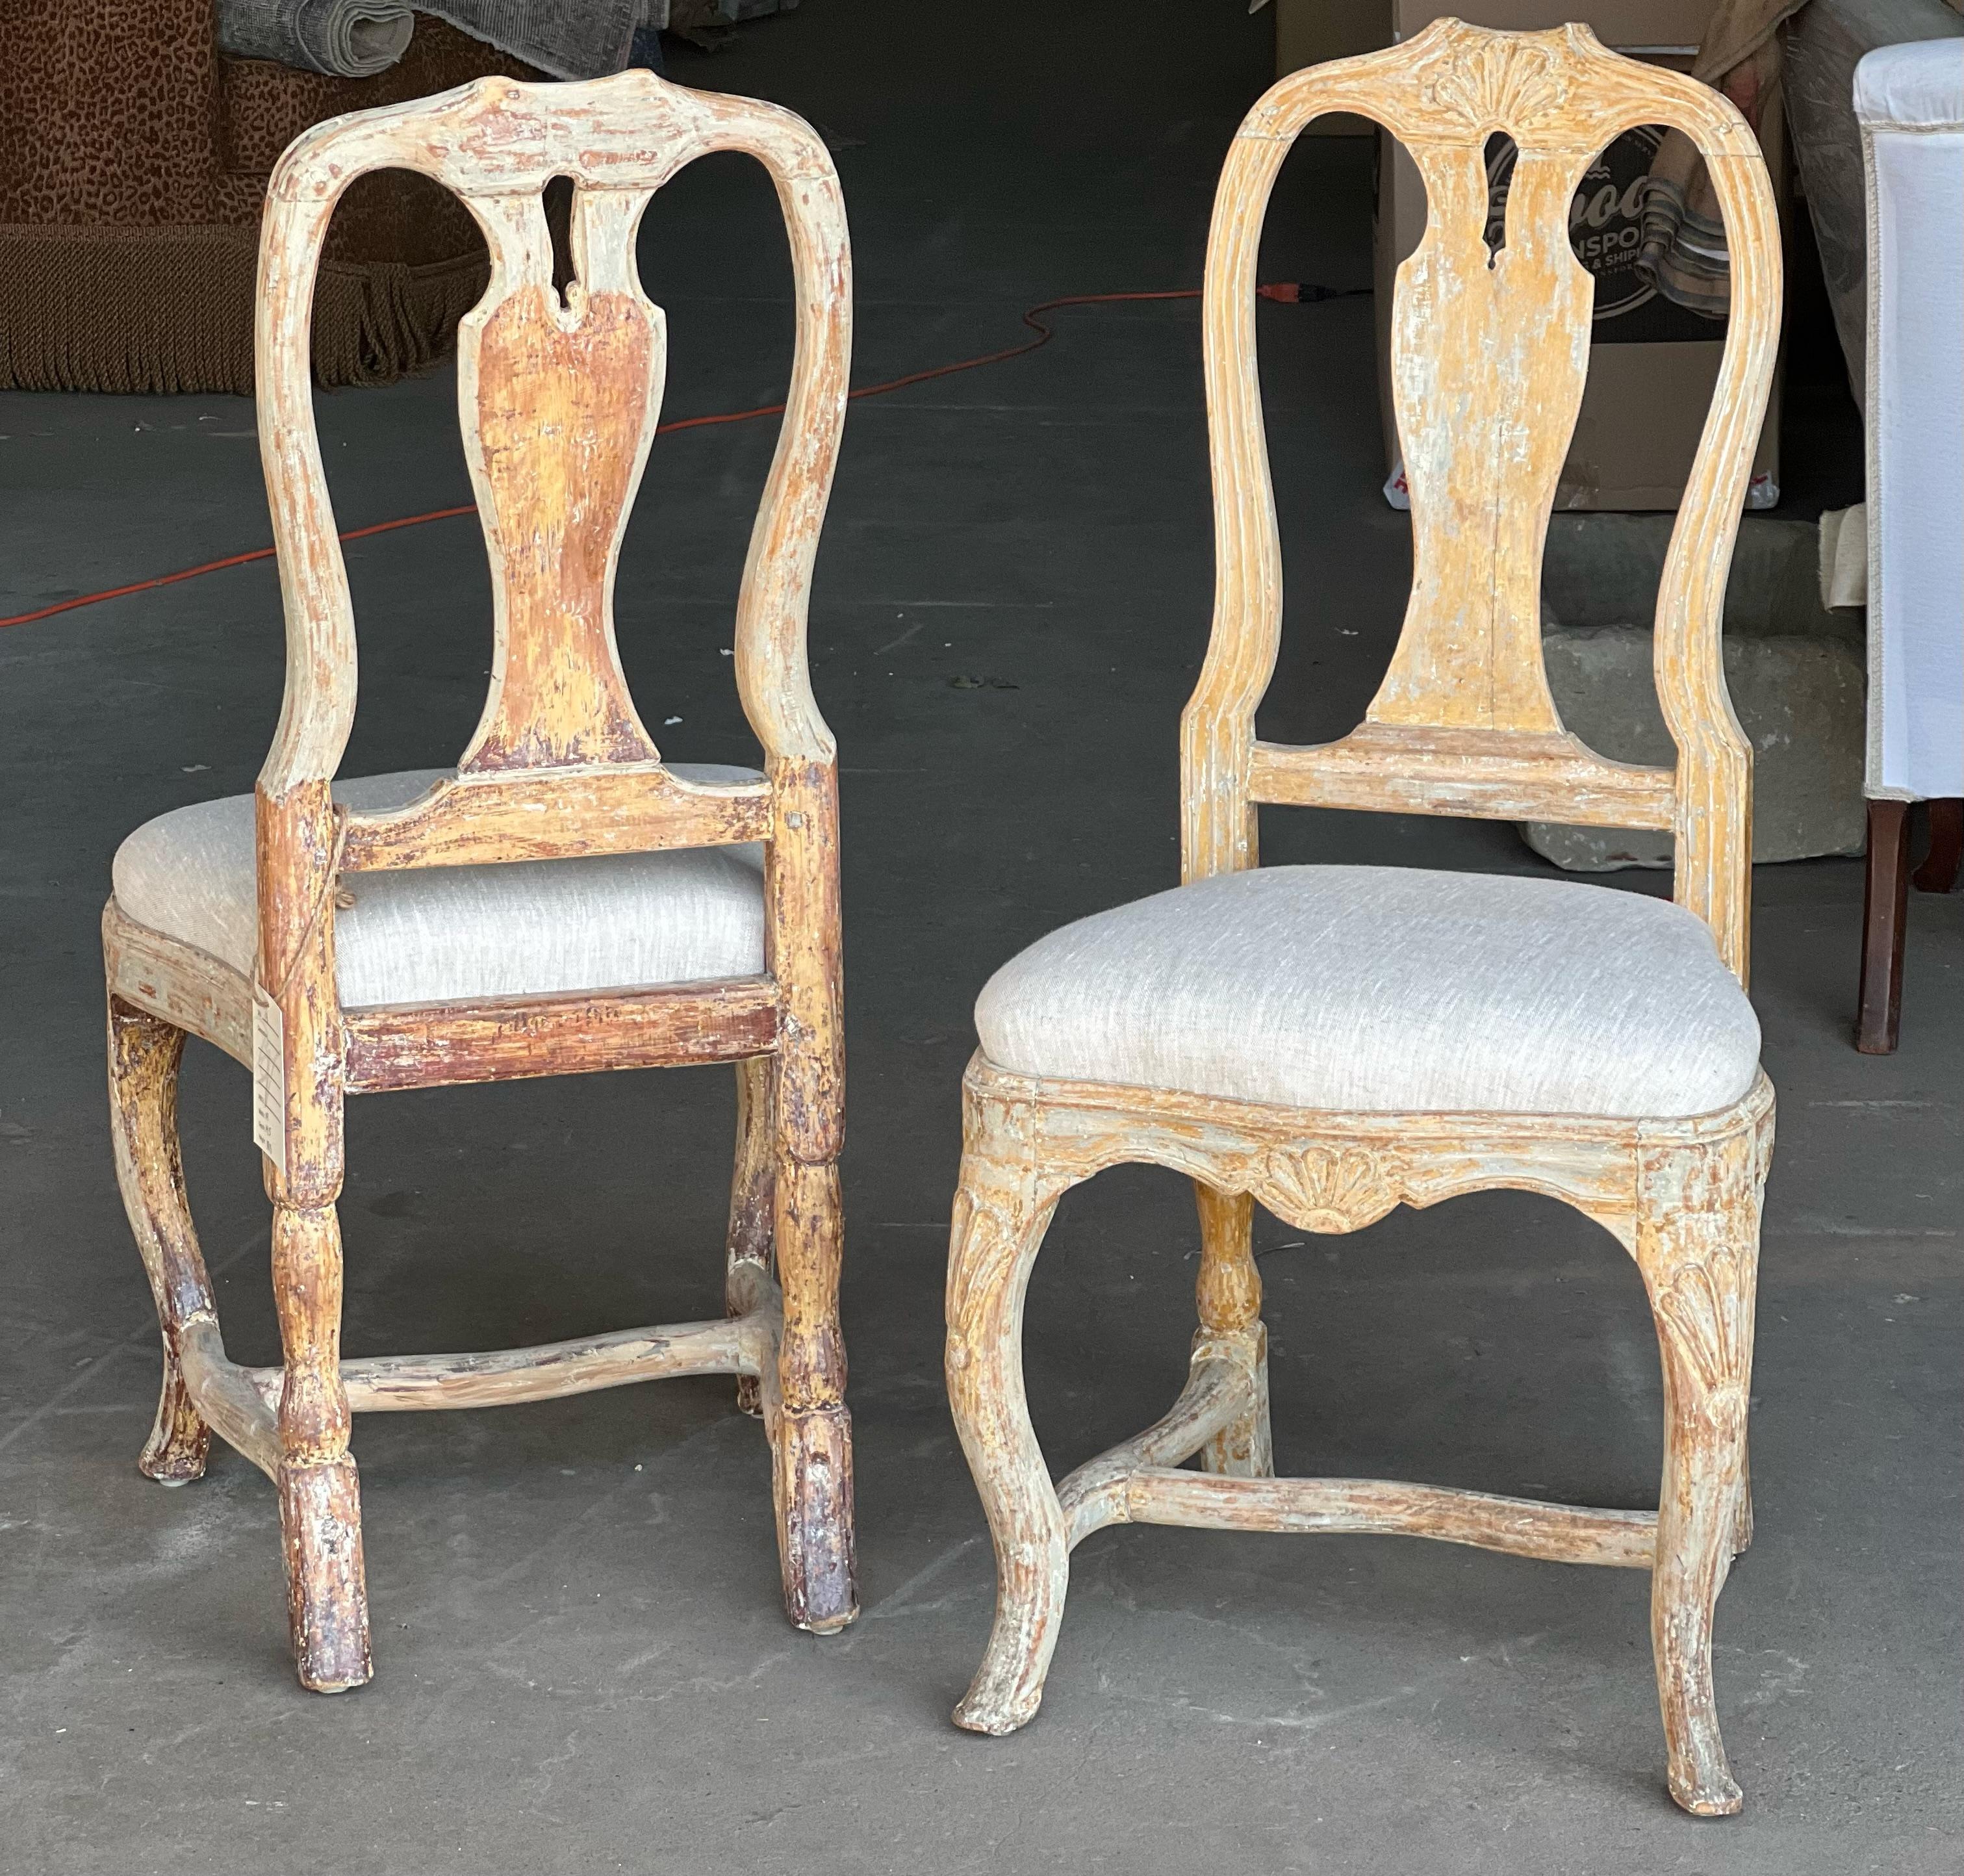 Une superbe paire de chaises rococo suédoises, robustes et de belles proportions, avec des détails sculptés à la main. Cette paire a été grattée à sec jusqu'à la peinture d'origine et dispose d'une nouvelle sellerie en lin. Milieu et fin du XVIIIe